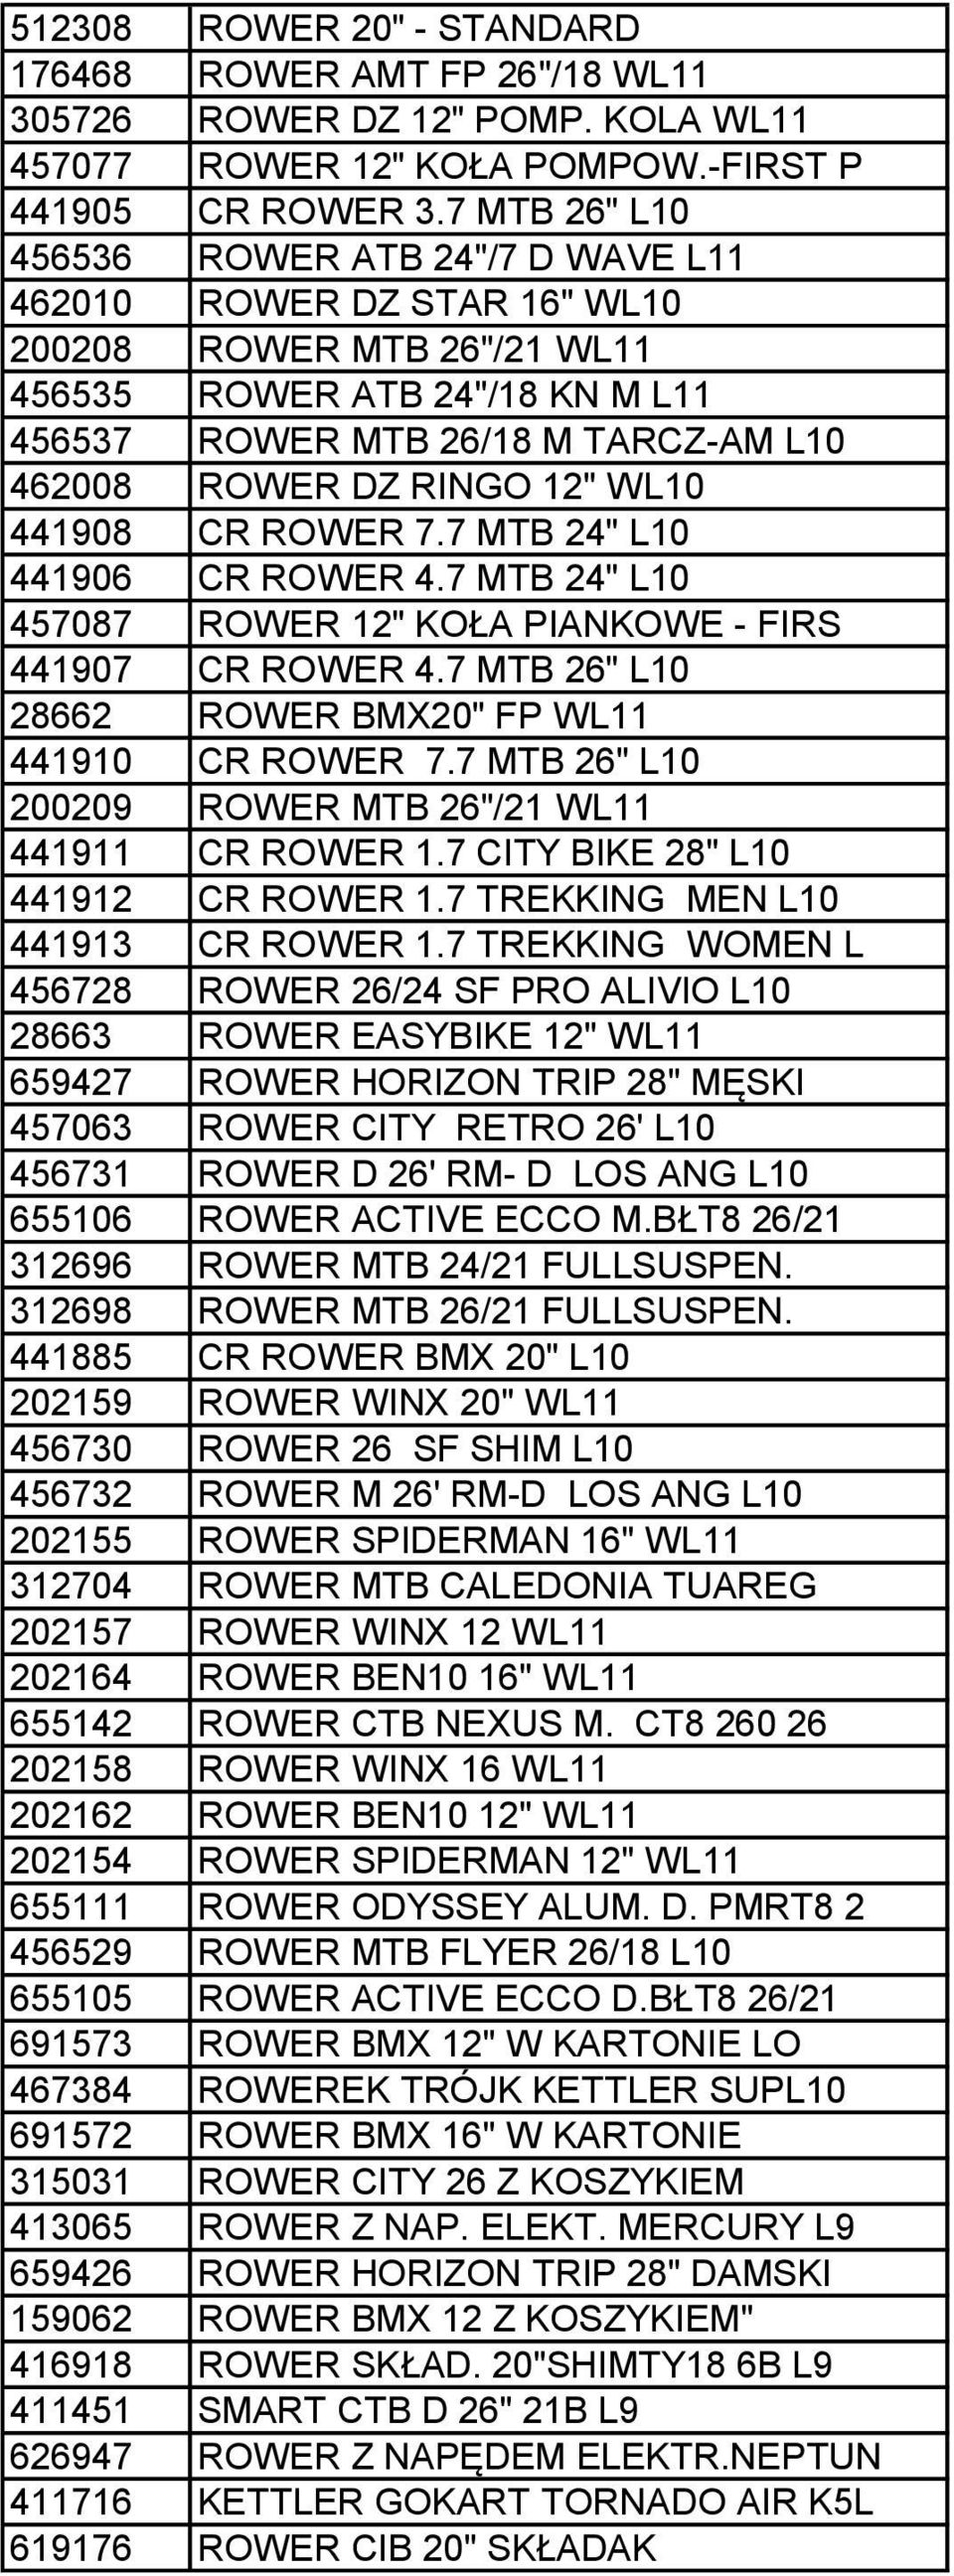 12" WL10 441908 CR ROWER 7.7 MTB 24" L10 441906 CR ROWER 4.7 MTB 24" L10 457087 ROWER 12" KOŁA PIANKOWE - FIRS 441907 CR ROWER 4.7 MTB 26" L10 28662 ROWER BMX20" FP WL11 441910 CR ROWER 7.